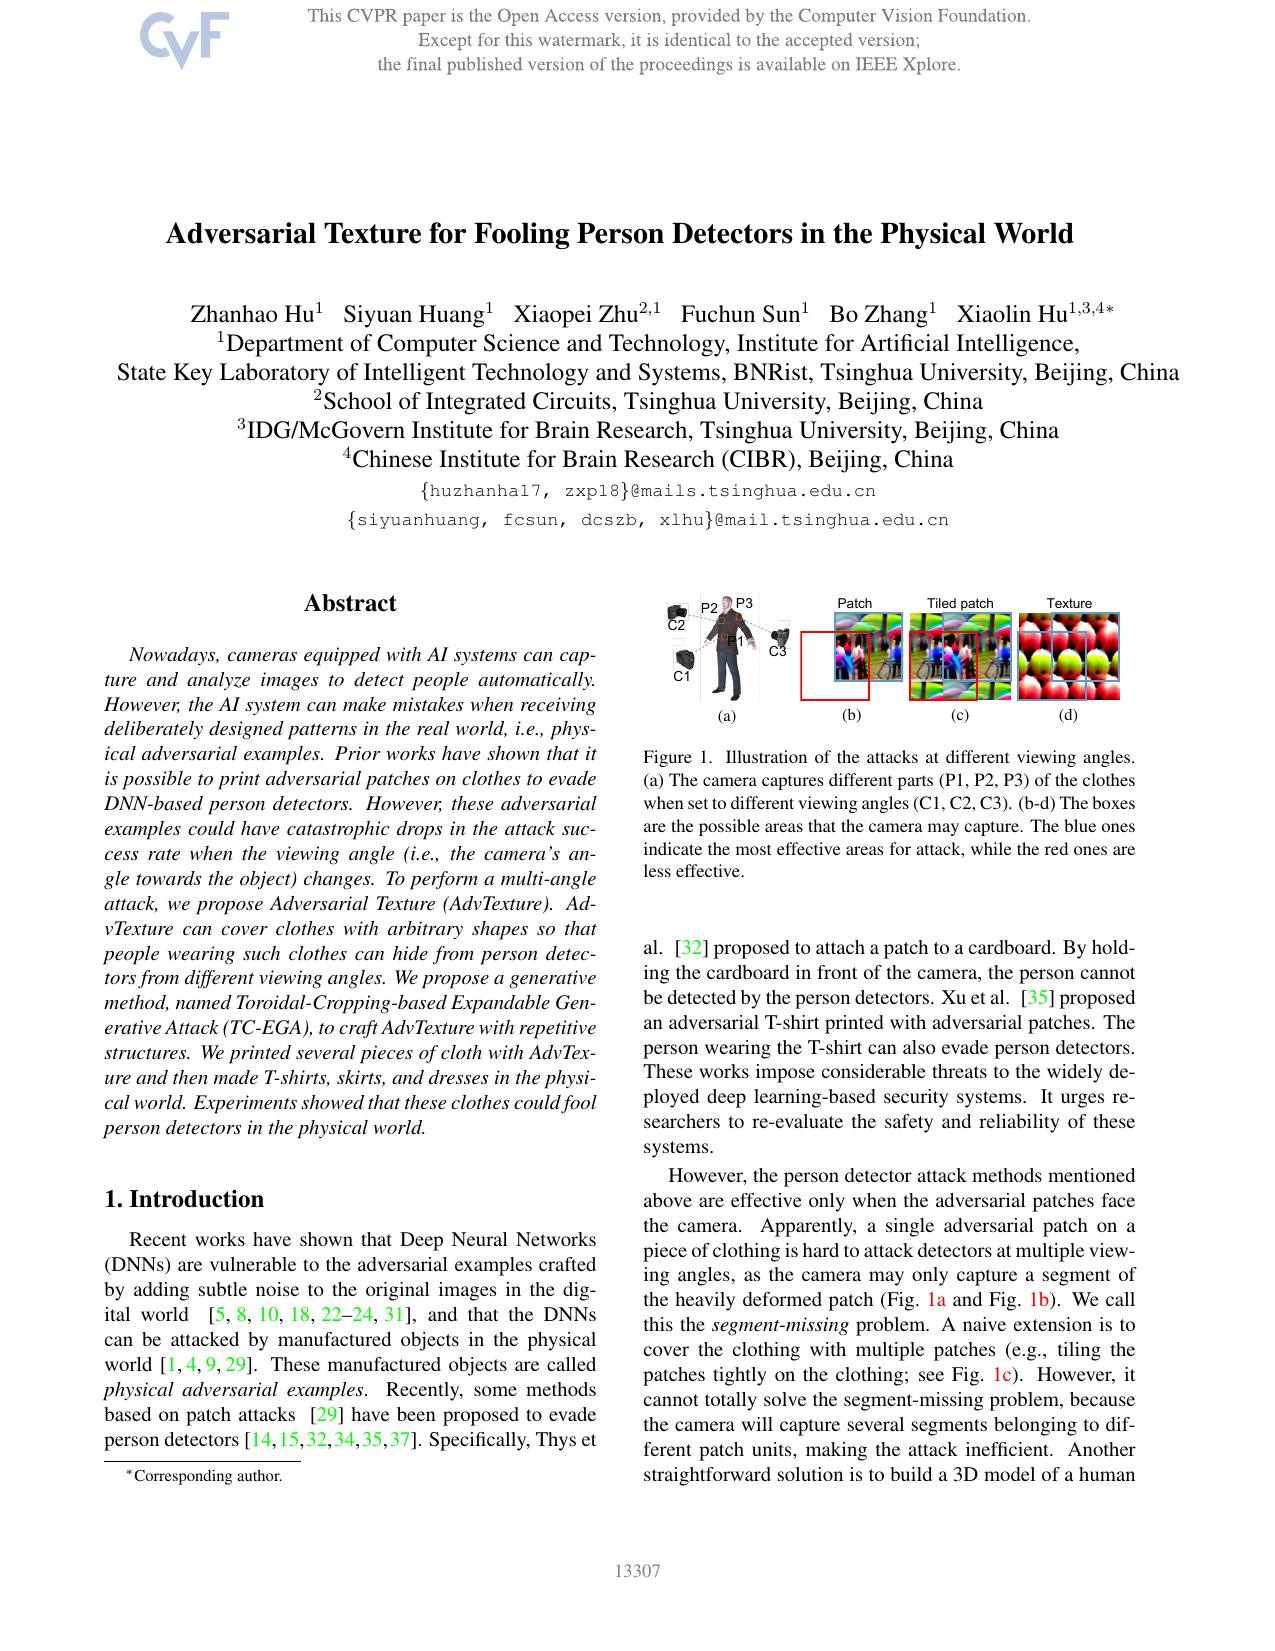 Adversarial Texture for Fooling Person Detectors in the Physical World by Zhanhao Hu & Siyuan Huang & Xiaopei Zhu & Fuchun Sun & Bo Zhang & Xiaolin Hu